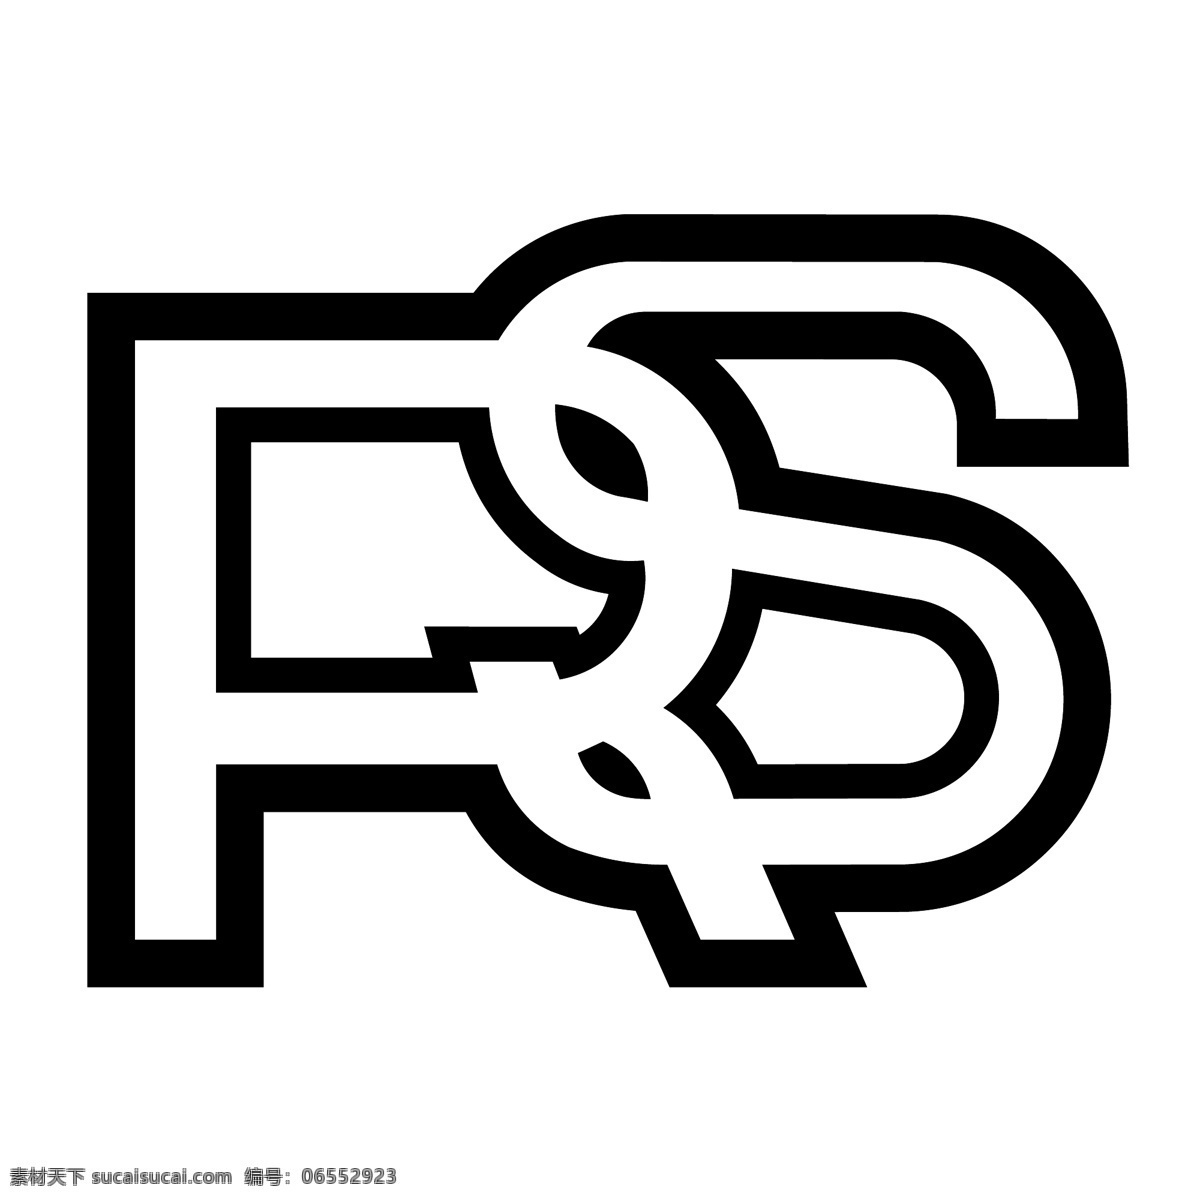 rs 福特 标识 公司 免费 品牌 品牌标识 商标 矢量标志下载 免费矢量标识 矢量 psd源文件 logo设计